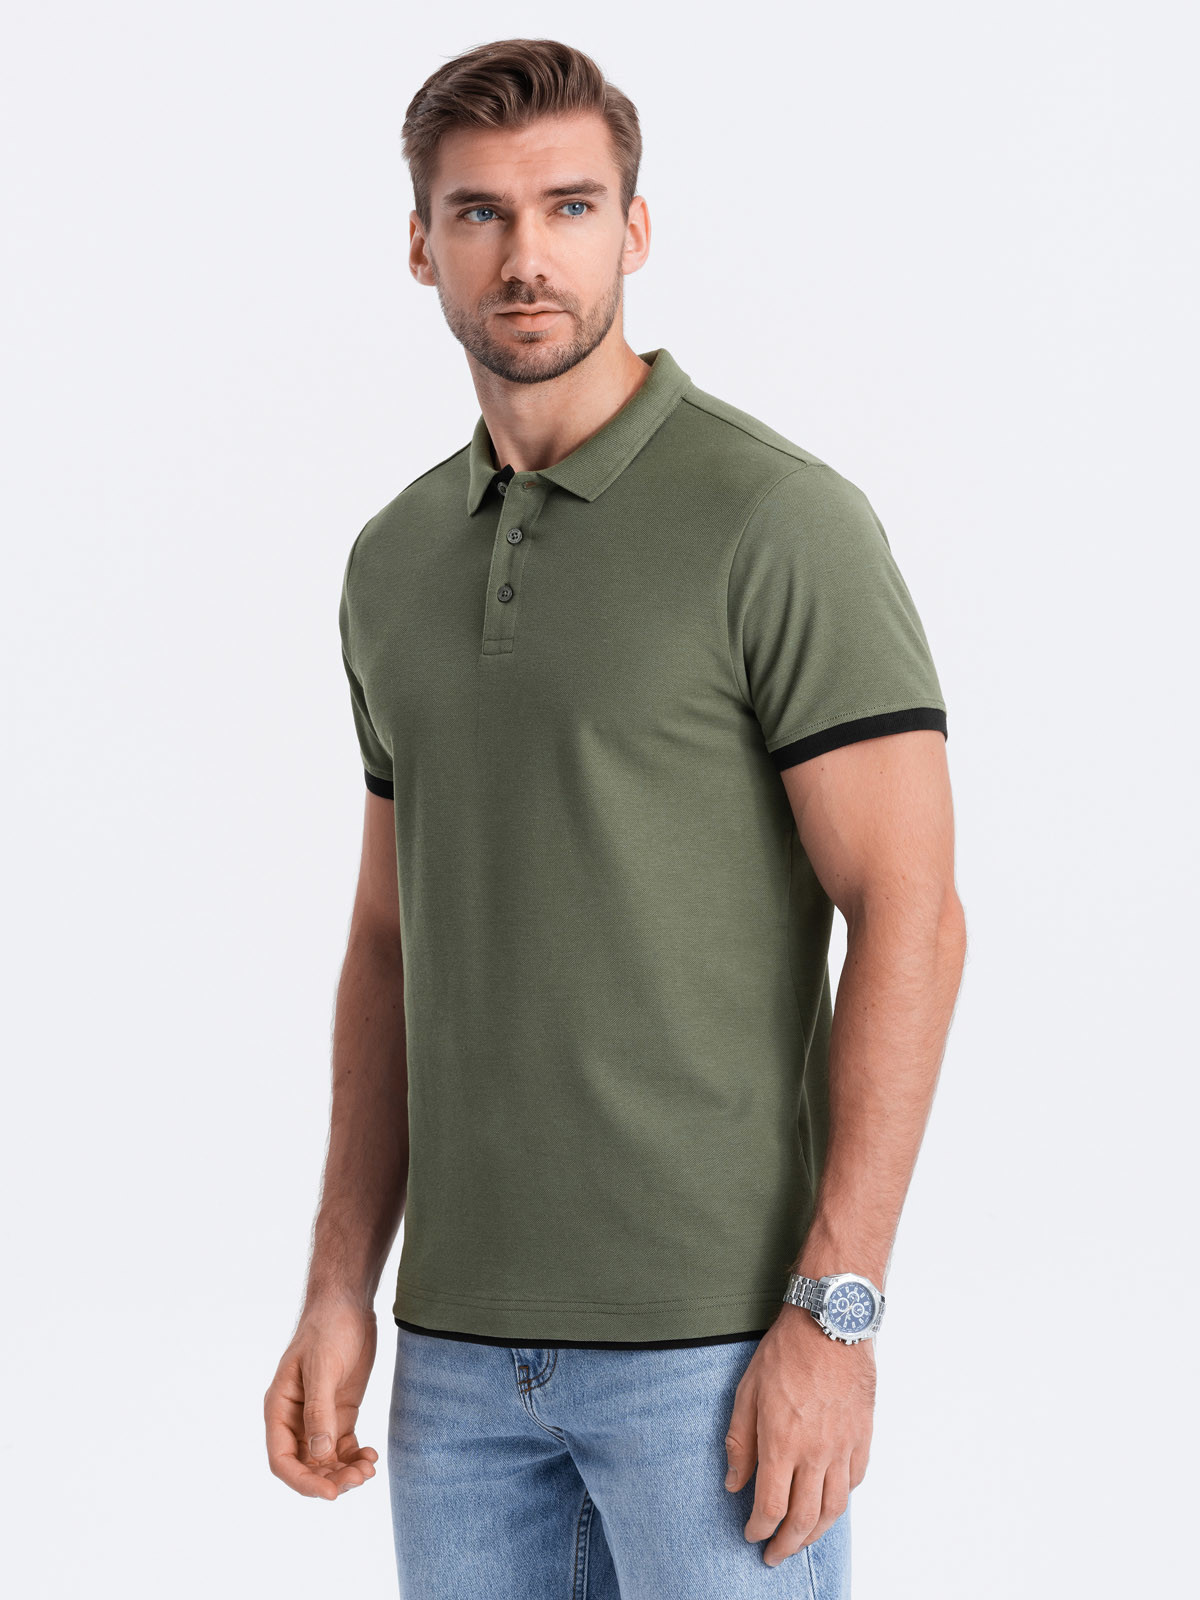 Men's cotton polo shirt - olive V6 OM-POSS V6 OM-POSS - 0113